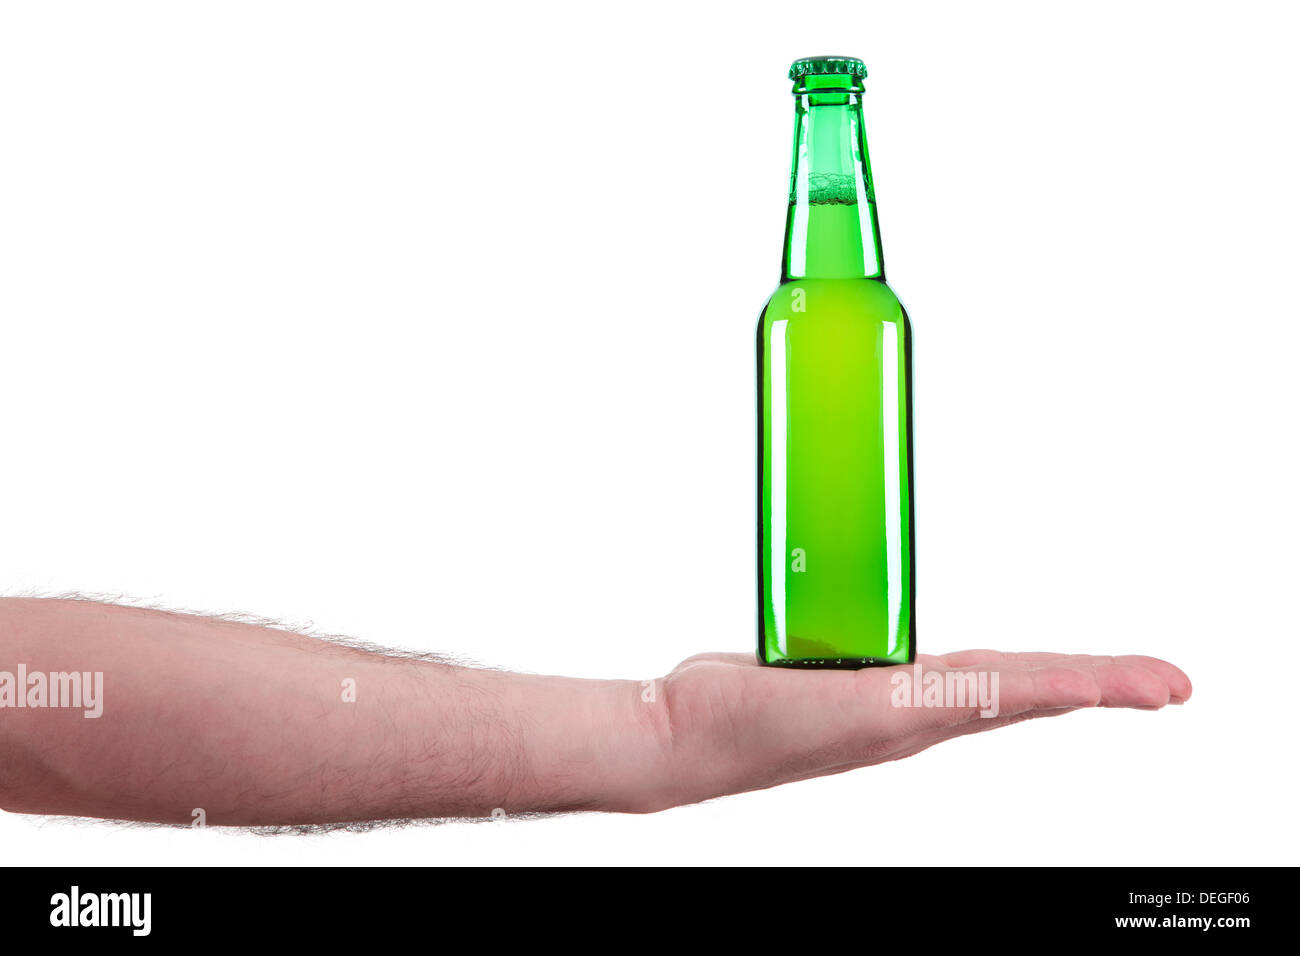 Una botella de cerveza en la palma de una mano. Foto de stock